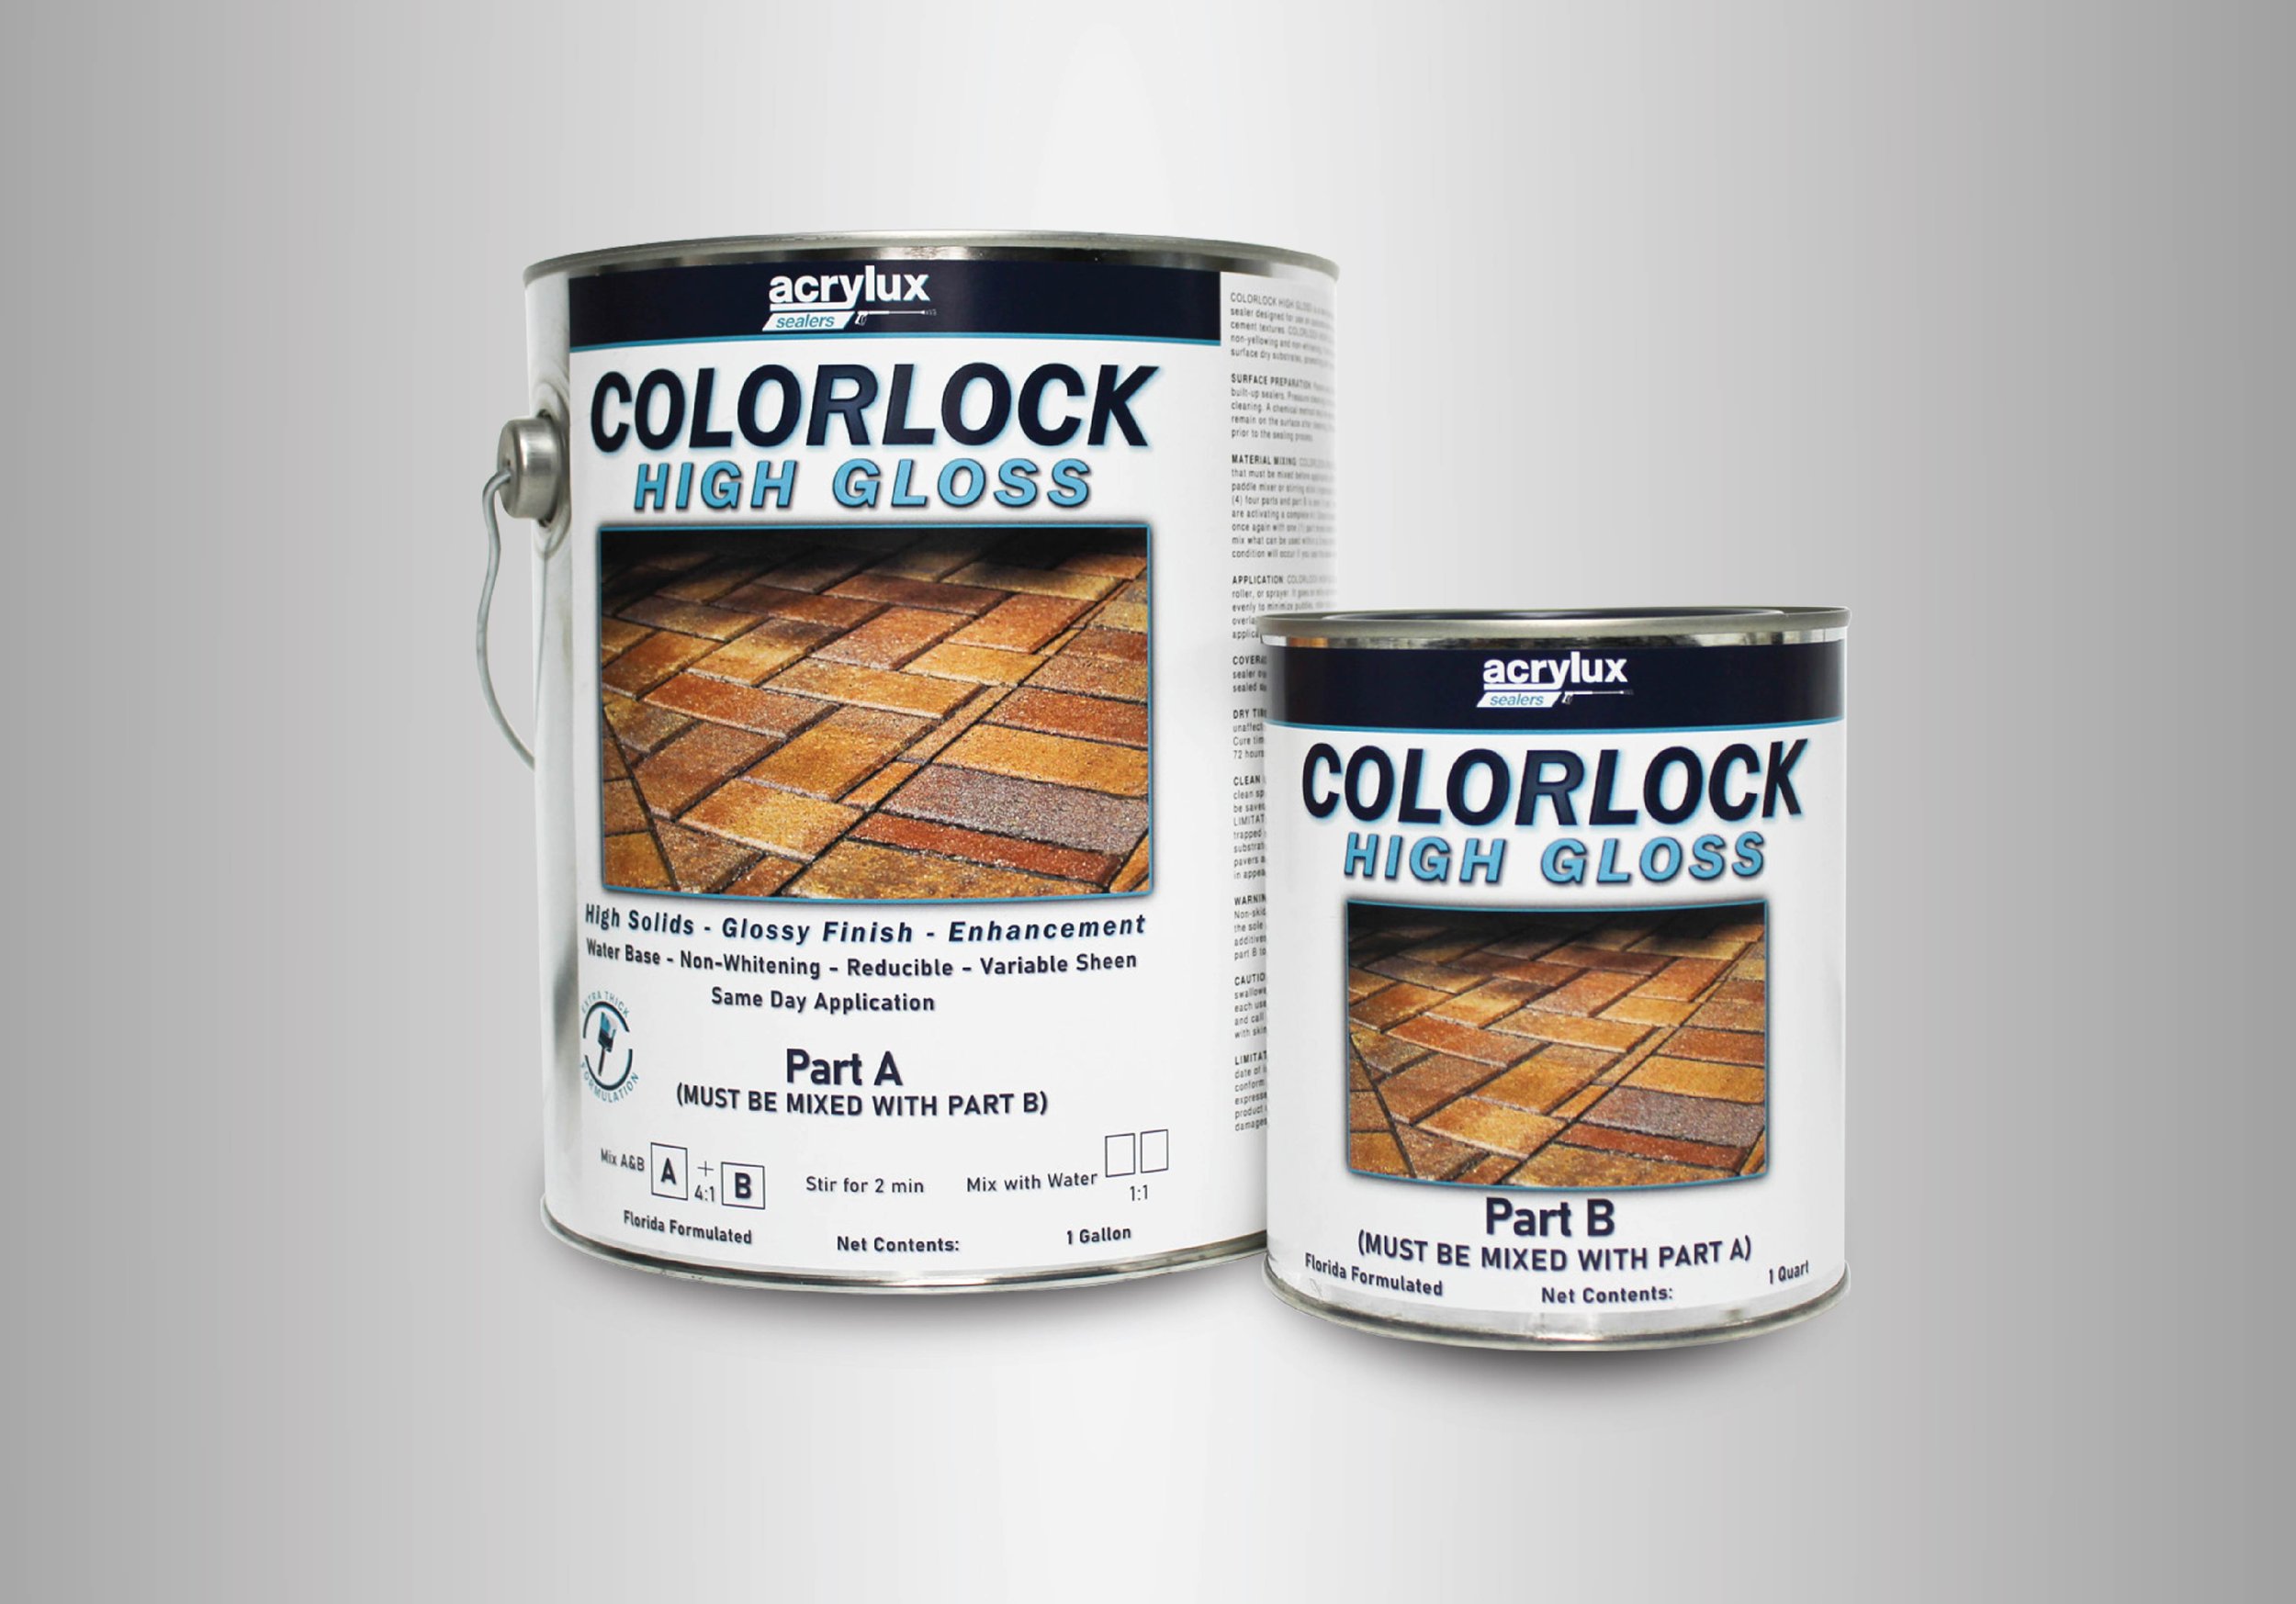 Colorlock Matte Two-Part Paver Sealer — Acrylux Paint